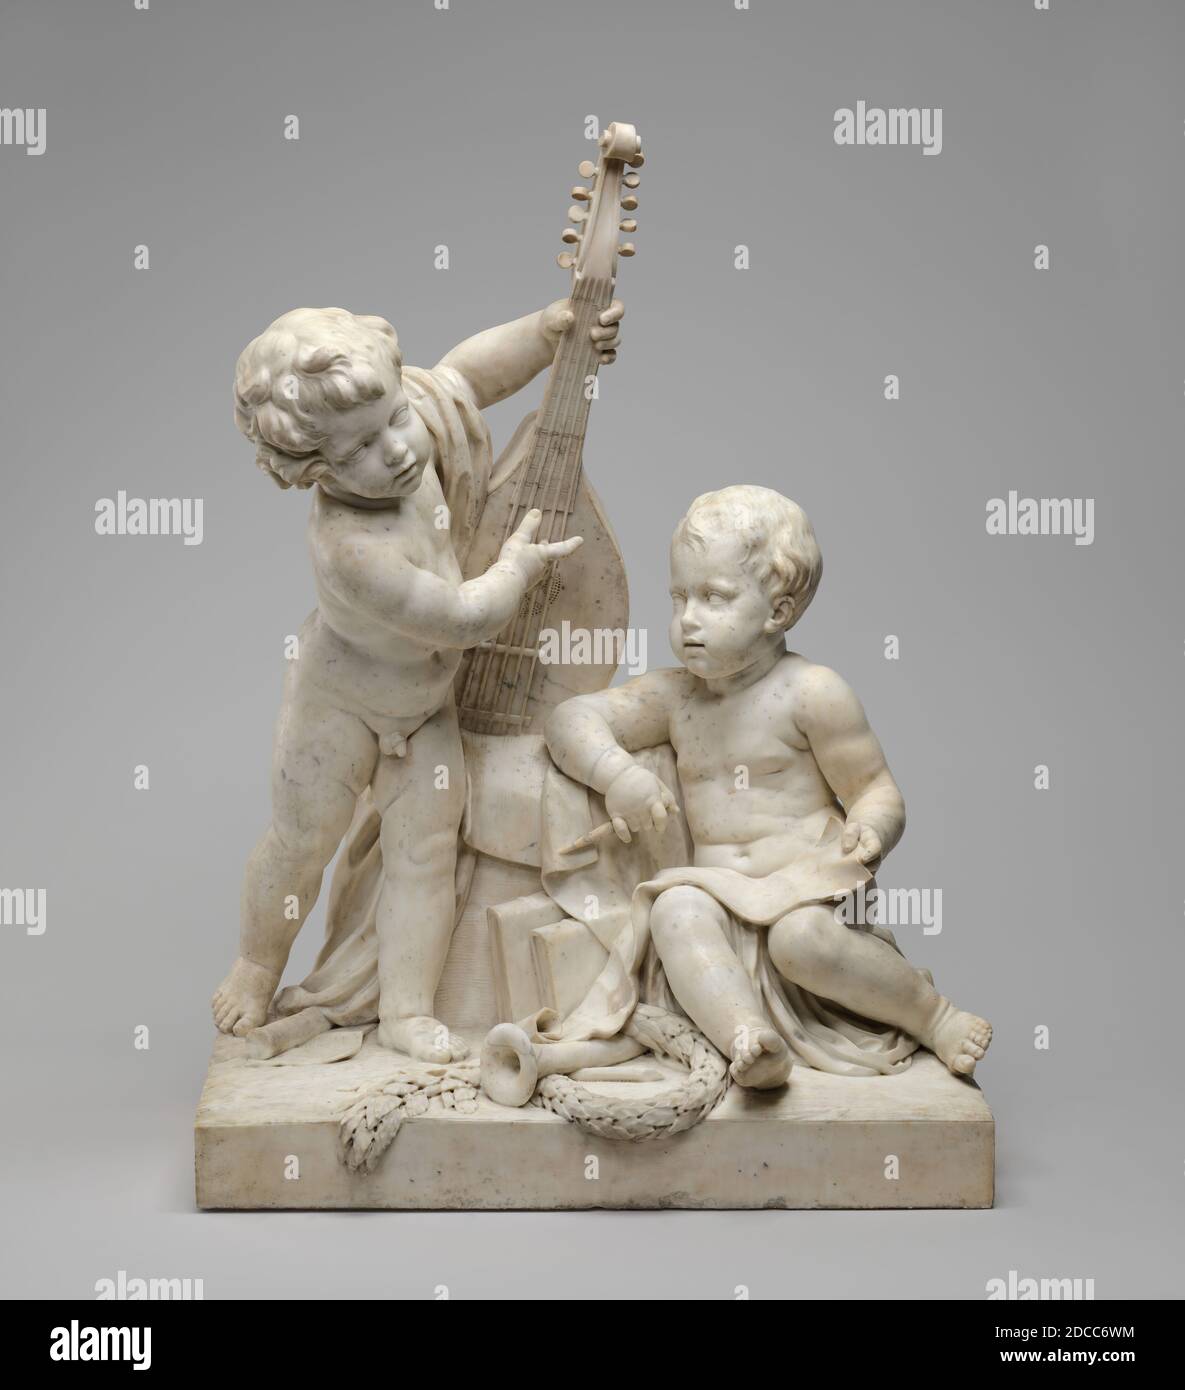 Clodion, (Bildhauer), Französisch, 1738 - 1814, Poesie und Musik, c. 1774/1778, Marmor, insgesamt: 117.6 x 89.1 x 56 cm (46 5/16 x 35 1/16 x 22 1/16 Zoll), Bruttogewicht: 390.093 kg (860 lb Stockfoto